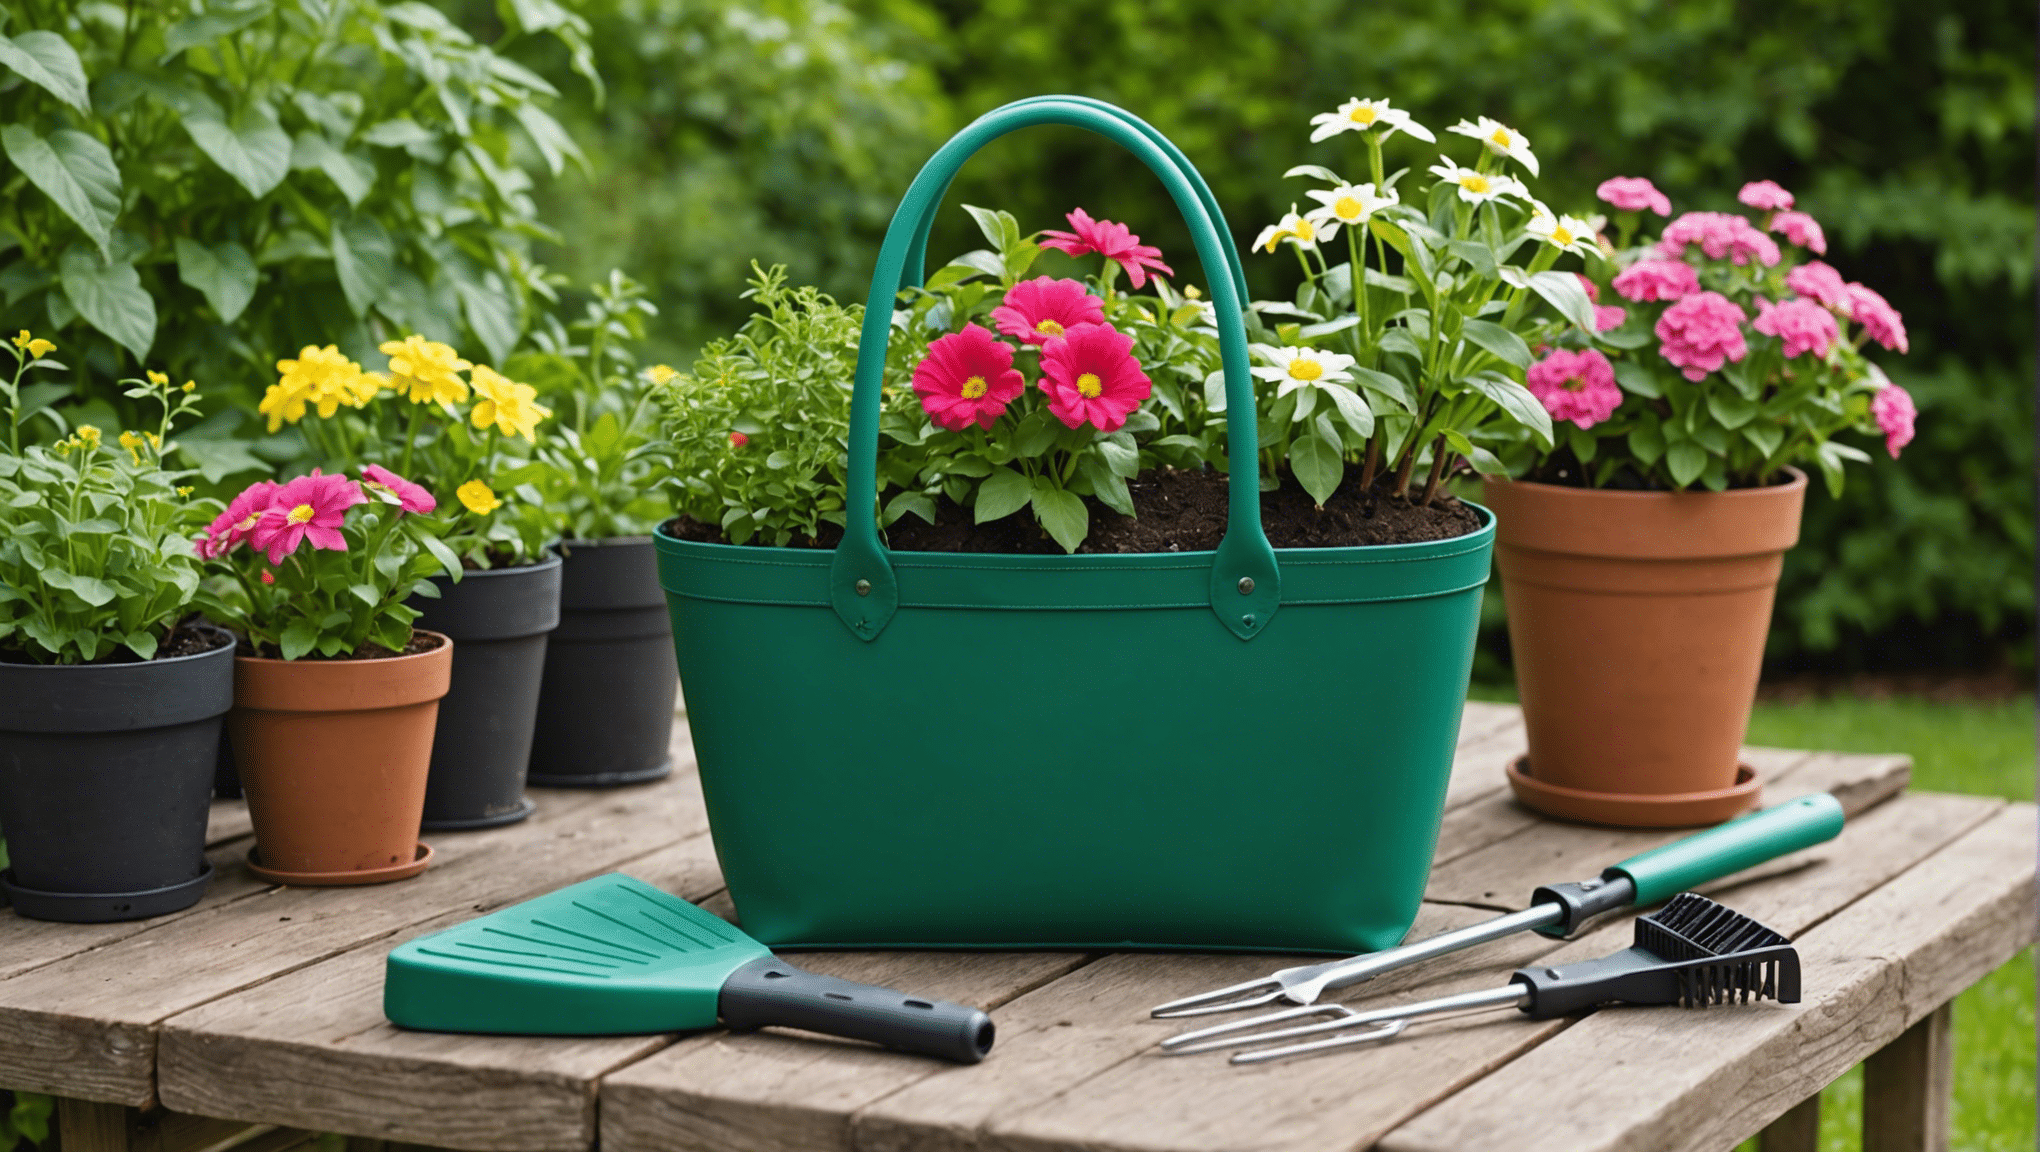 aprenda sobre os recursos essenciais de uma bolsa de jardinagem e encontre a bolsa perfeita para suas necessidades de jardinagem. descubra materiais duráveis, amplo armazenamento e design conveniente para uma experiência de jardinagem encantadora.